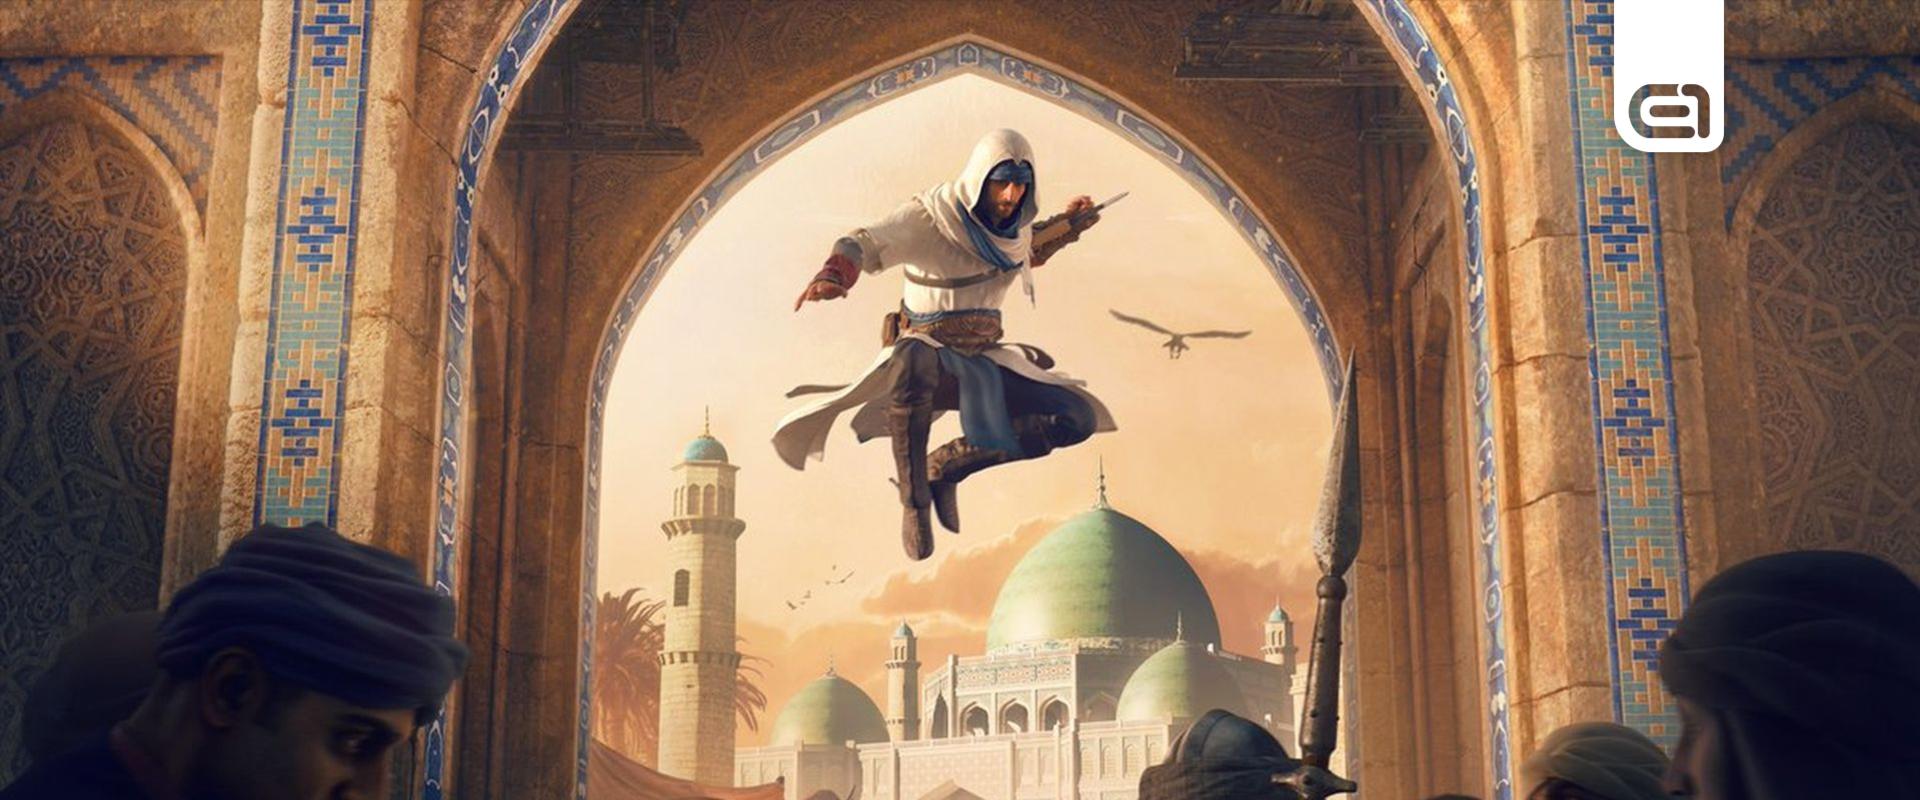 Pletykák szerint elhalasztották az Assassin's Creed Mirage-t